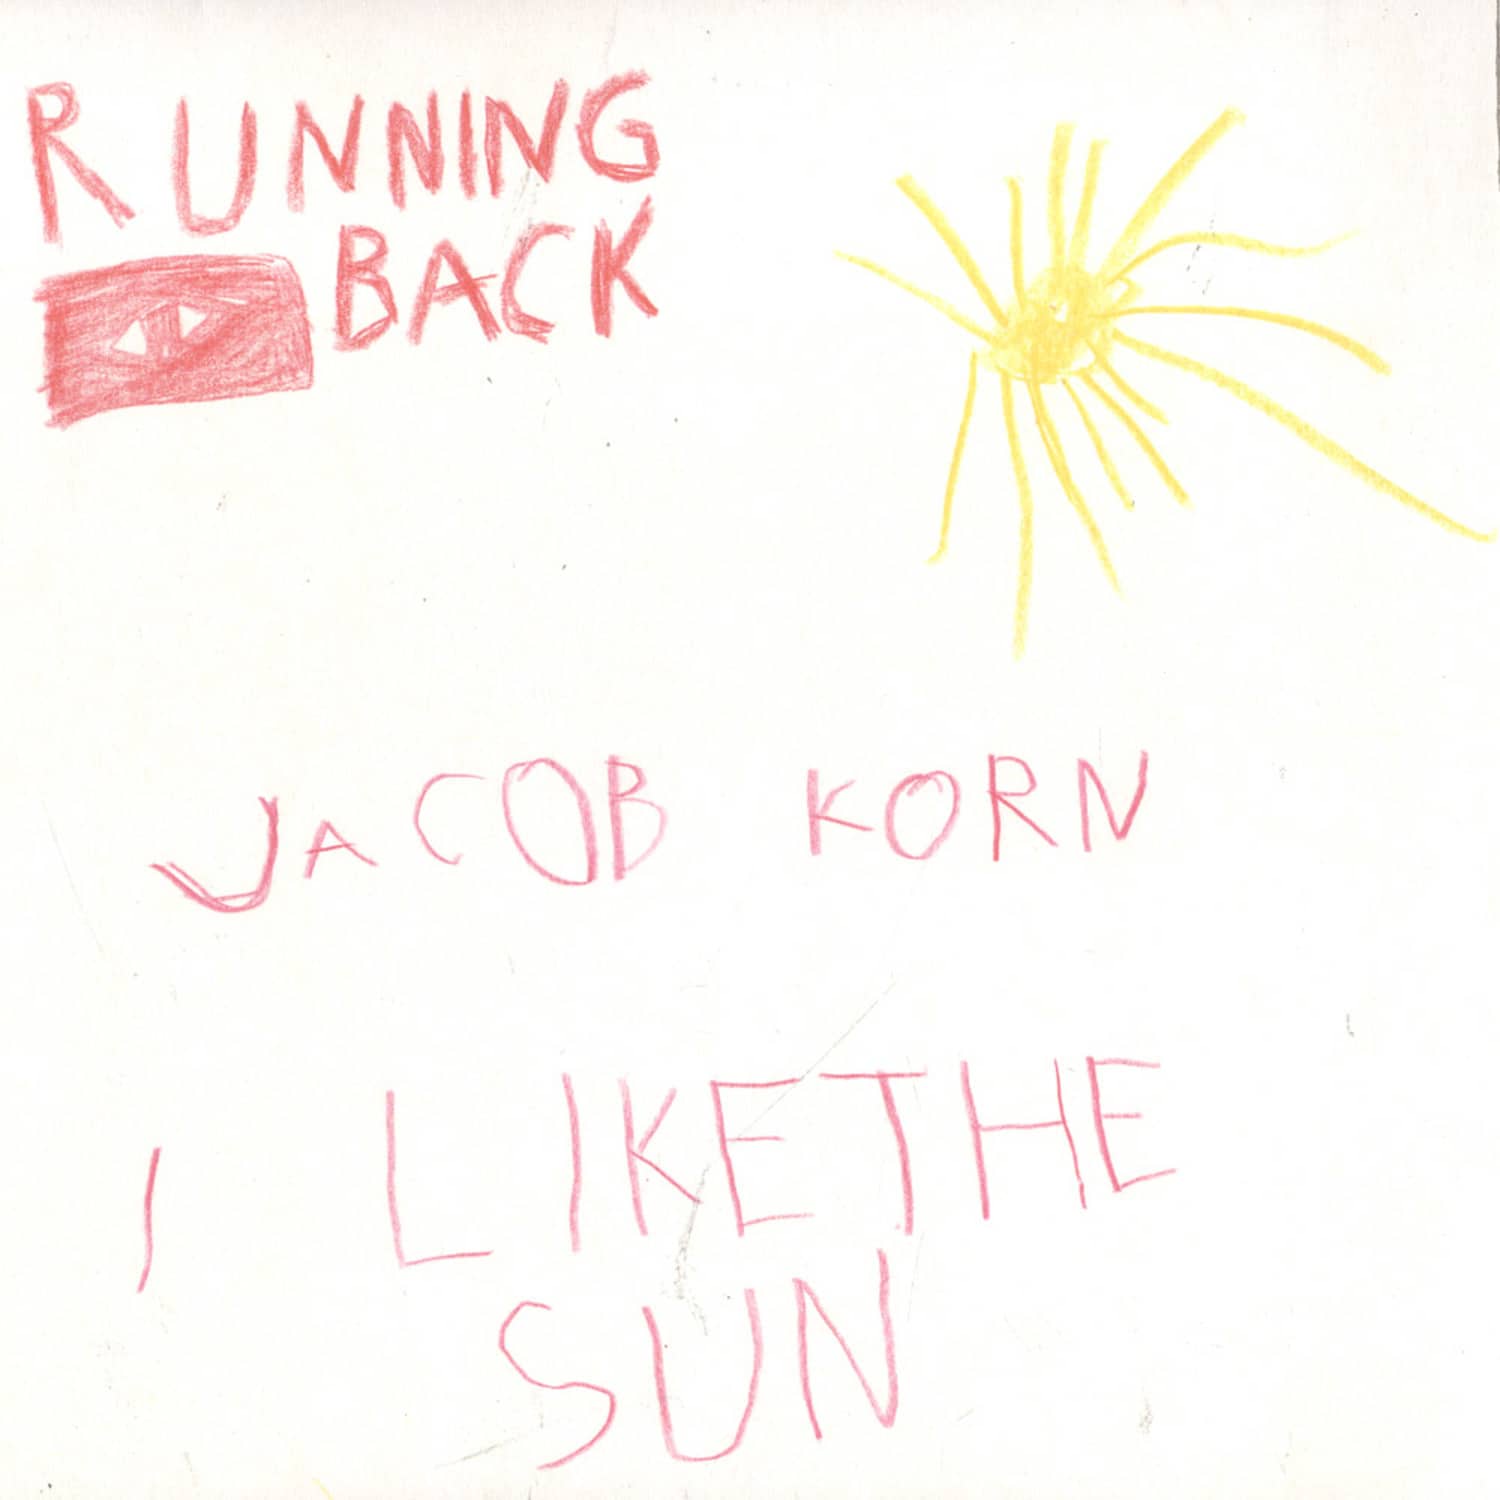 Jacob Korn - I LIKE THE SUN, PRINS THOMAS DISKOMIKS